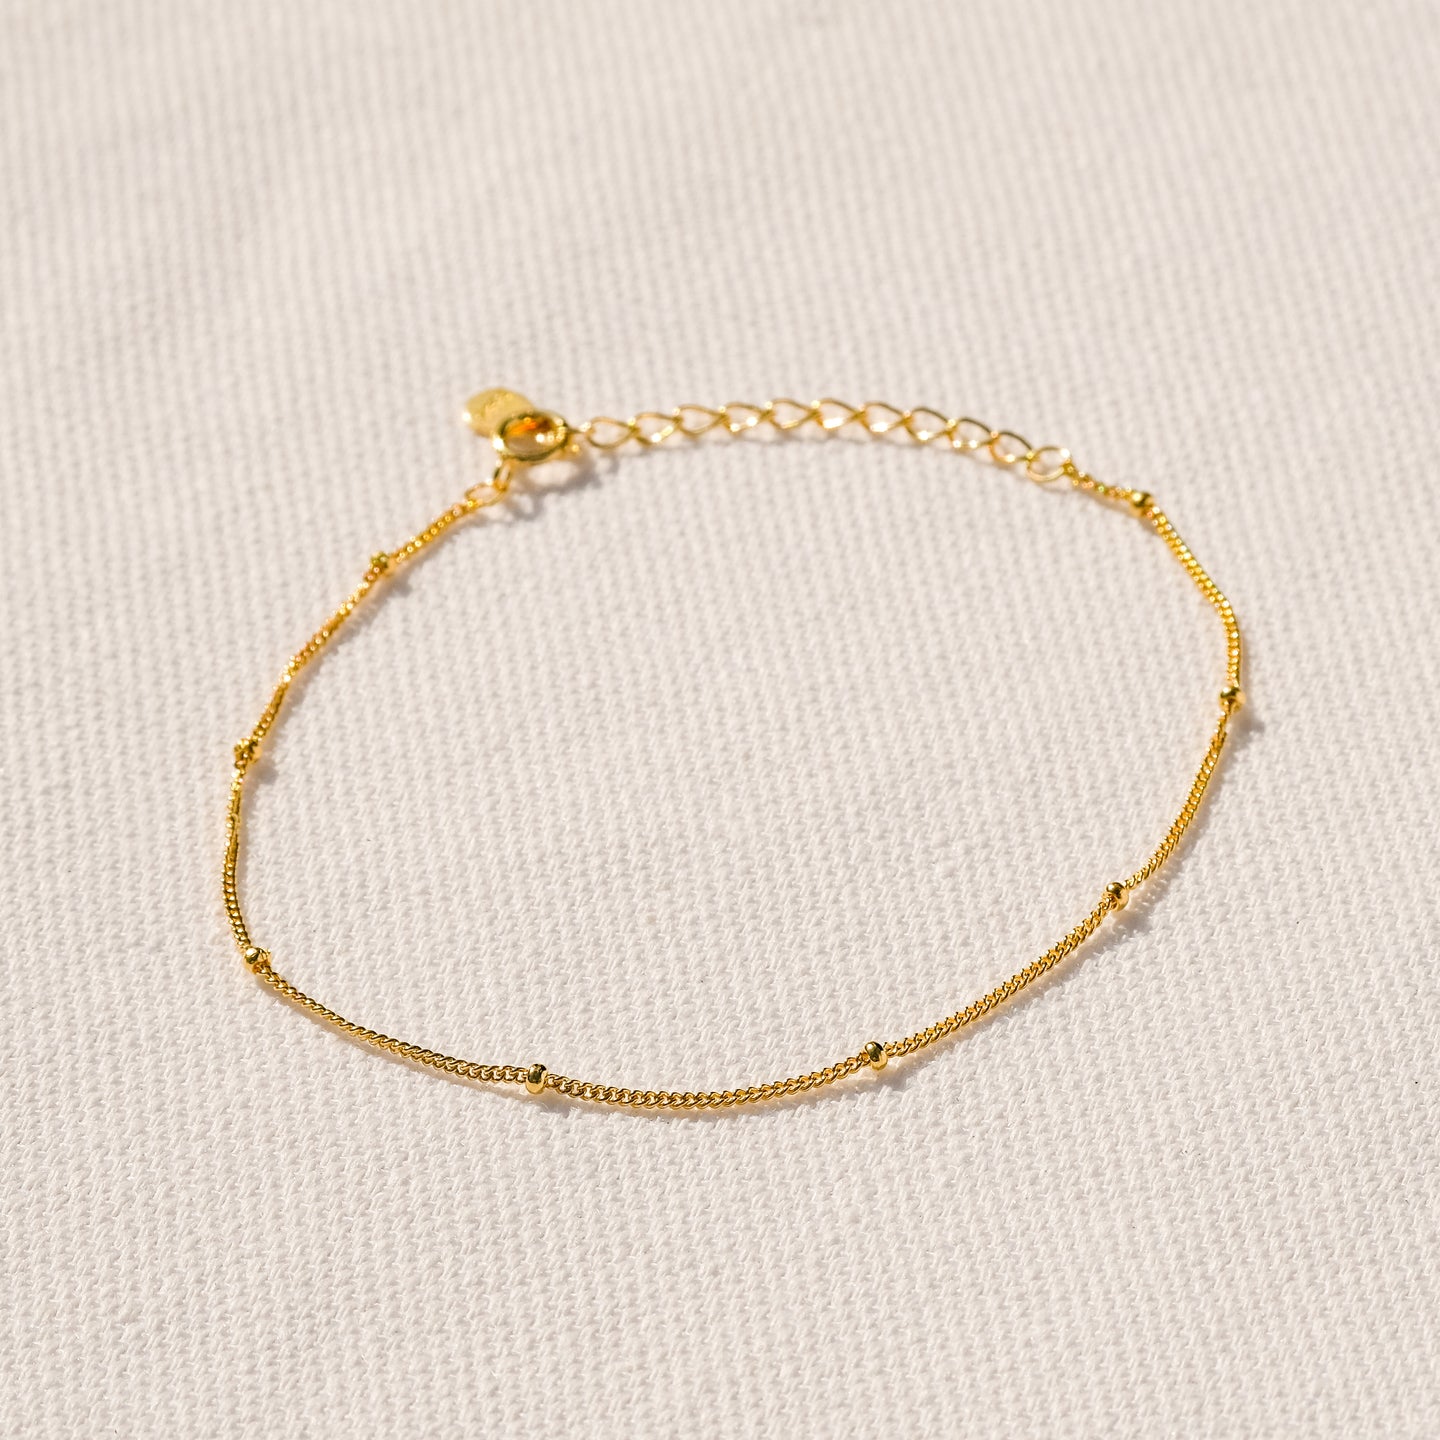 products/conor-bracelet-18k-gold-vermeil-1.jpg